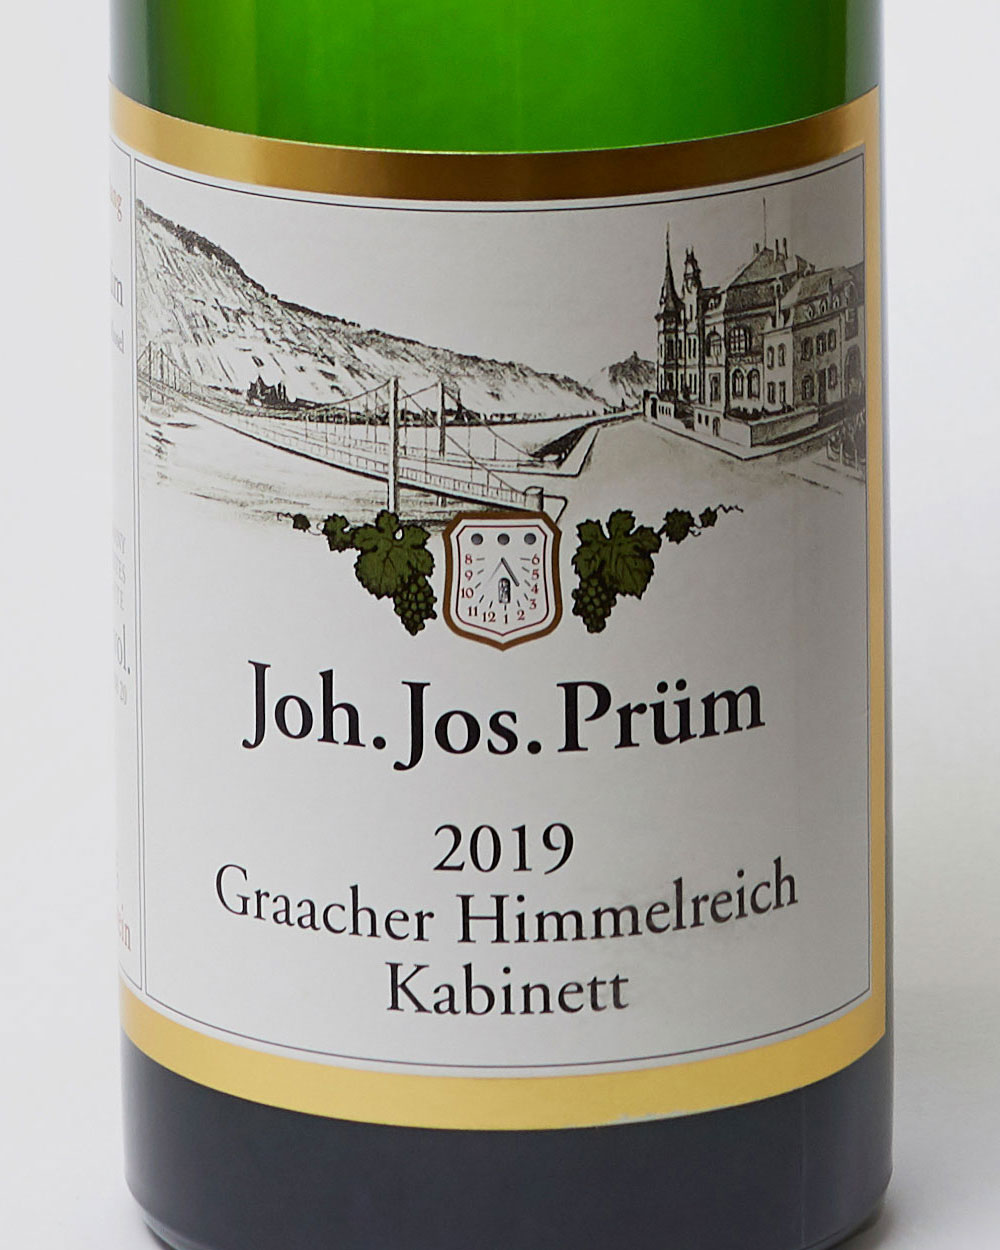 Joh Jos Prüm Graacher Himmelreich Kabinett 2019 label